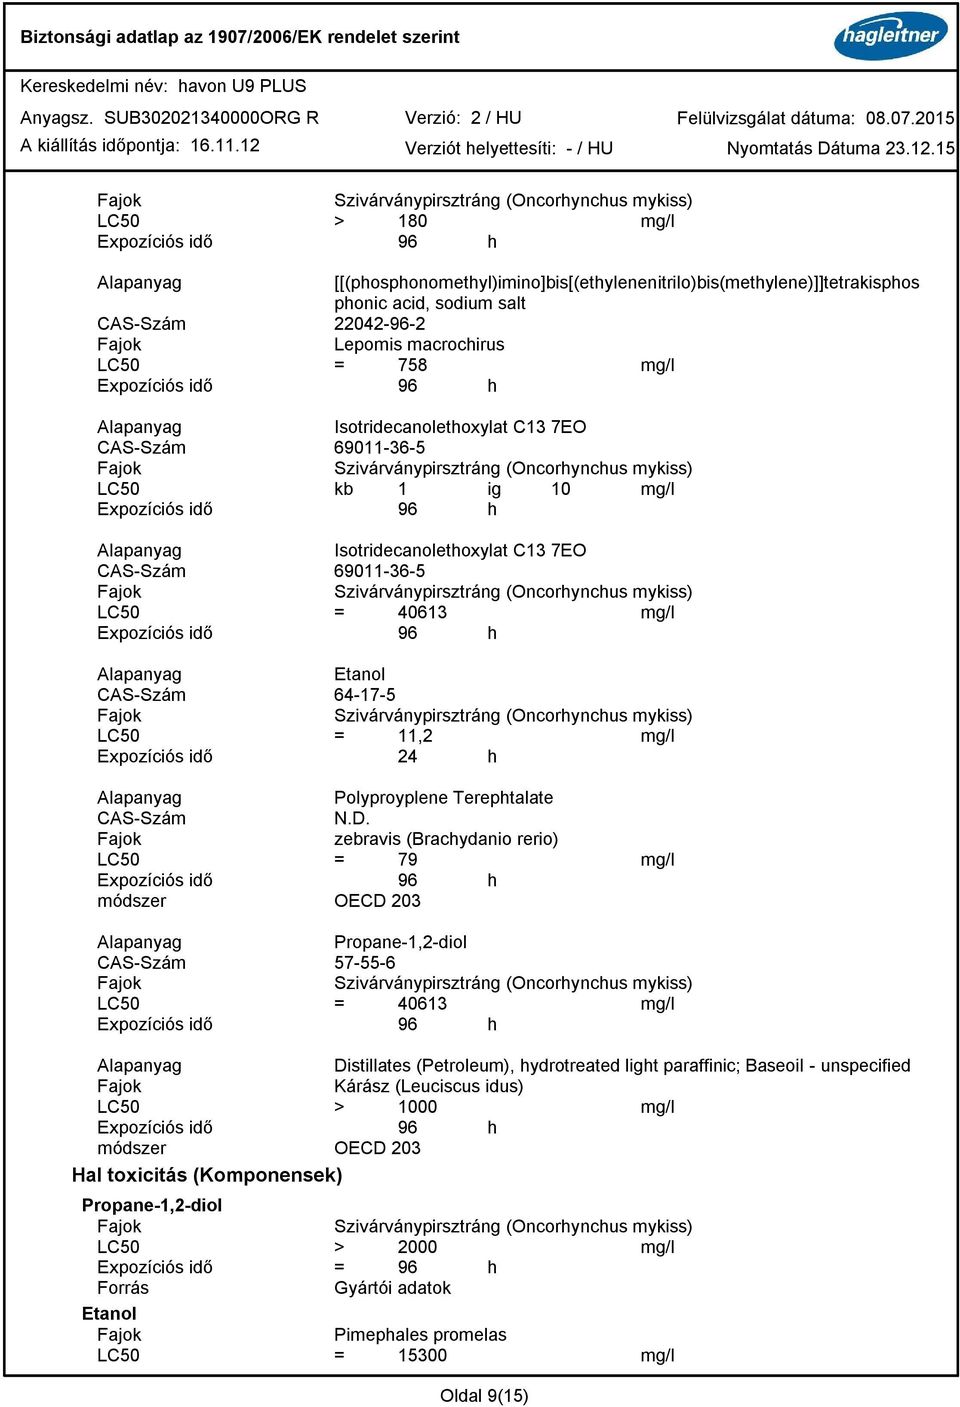 Szivárványpirsztráng (Oncorhynchus mykiss) LC50 = 40613 mg/l CAS-Szám 64-17-5 Szivárványpirsztráng (Oncorhynchus mykiss) LC50 = 11,2 mg/l Expozíciós idő 24 h Polyproyplene Terephtalate CAS-Szám N.D.